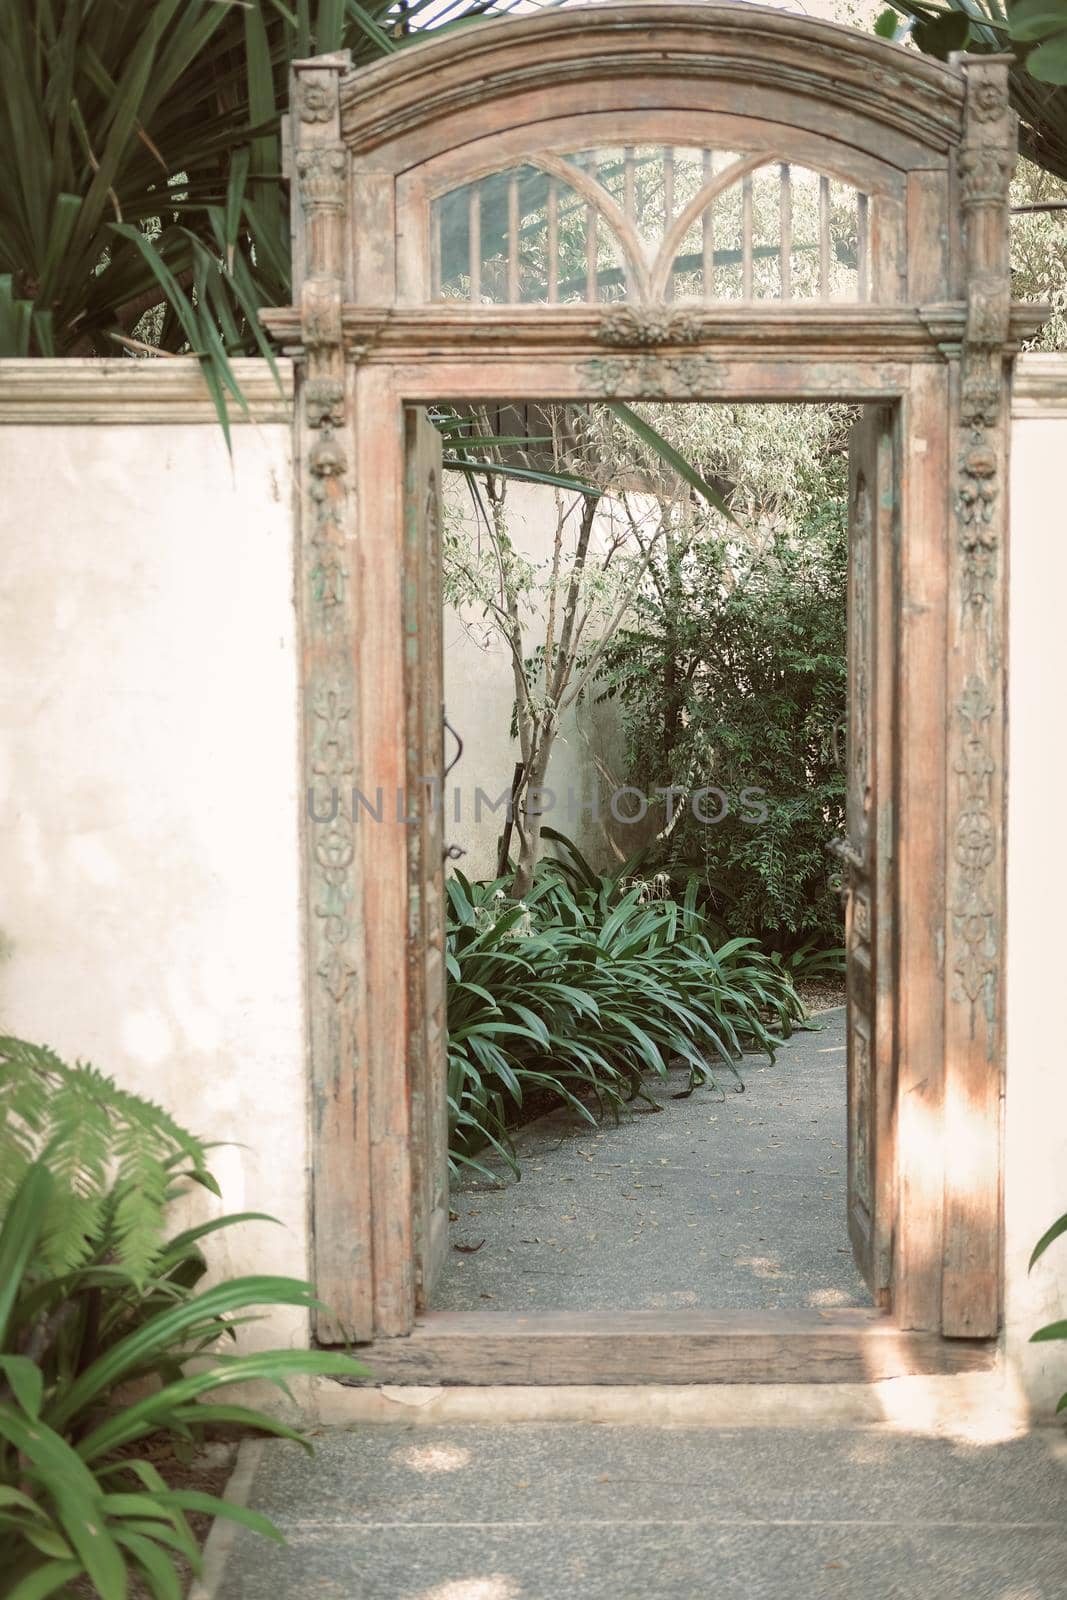 tree plant beside walkway in garden & old vintage wooden door